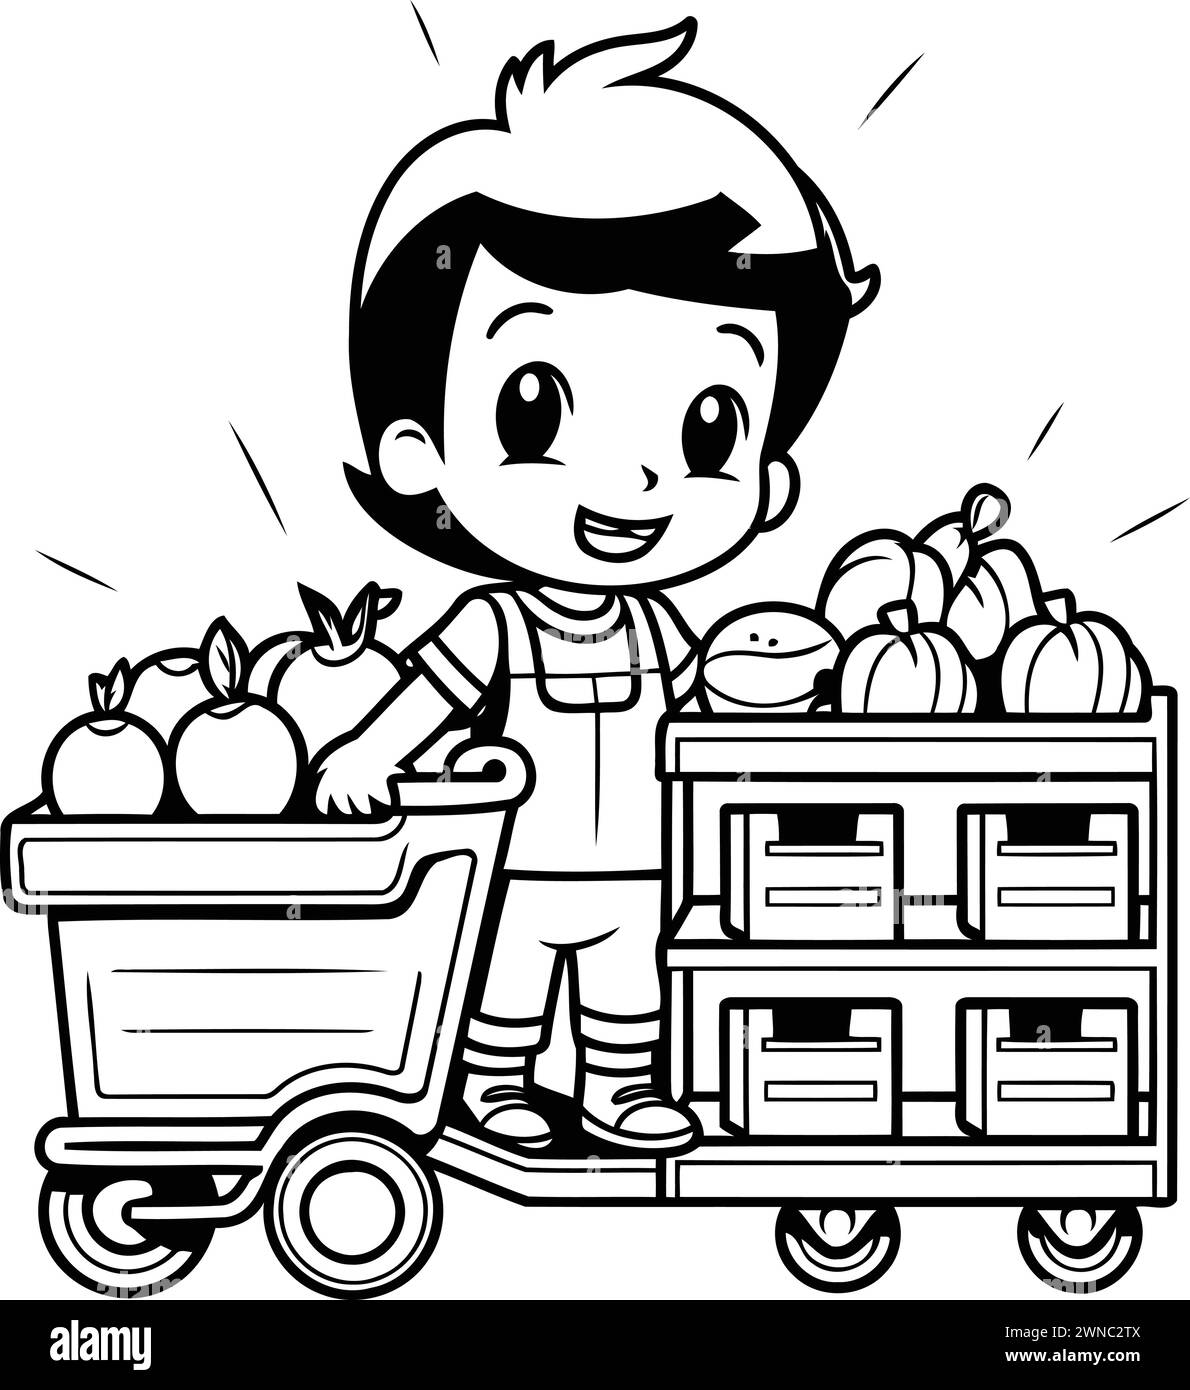 Garçon de fruits et légumes avec chariot et boîtes illustration vectorielle design graphique Illustration de Vecteur